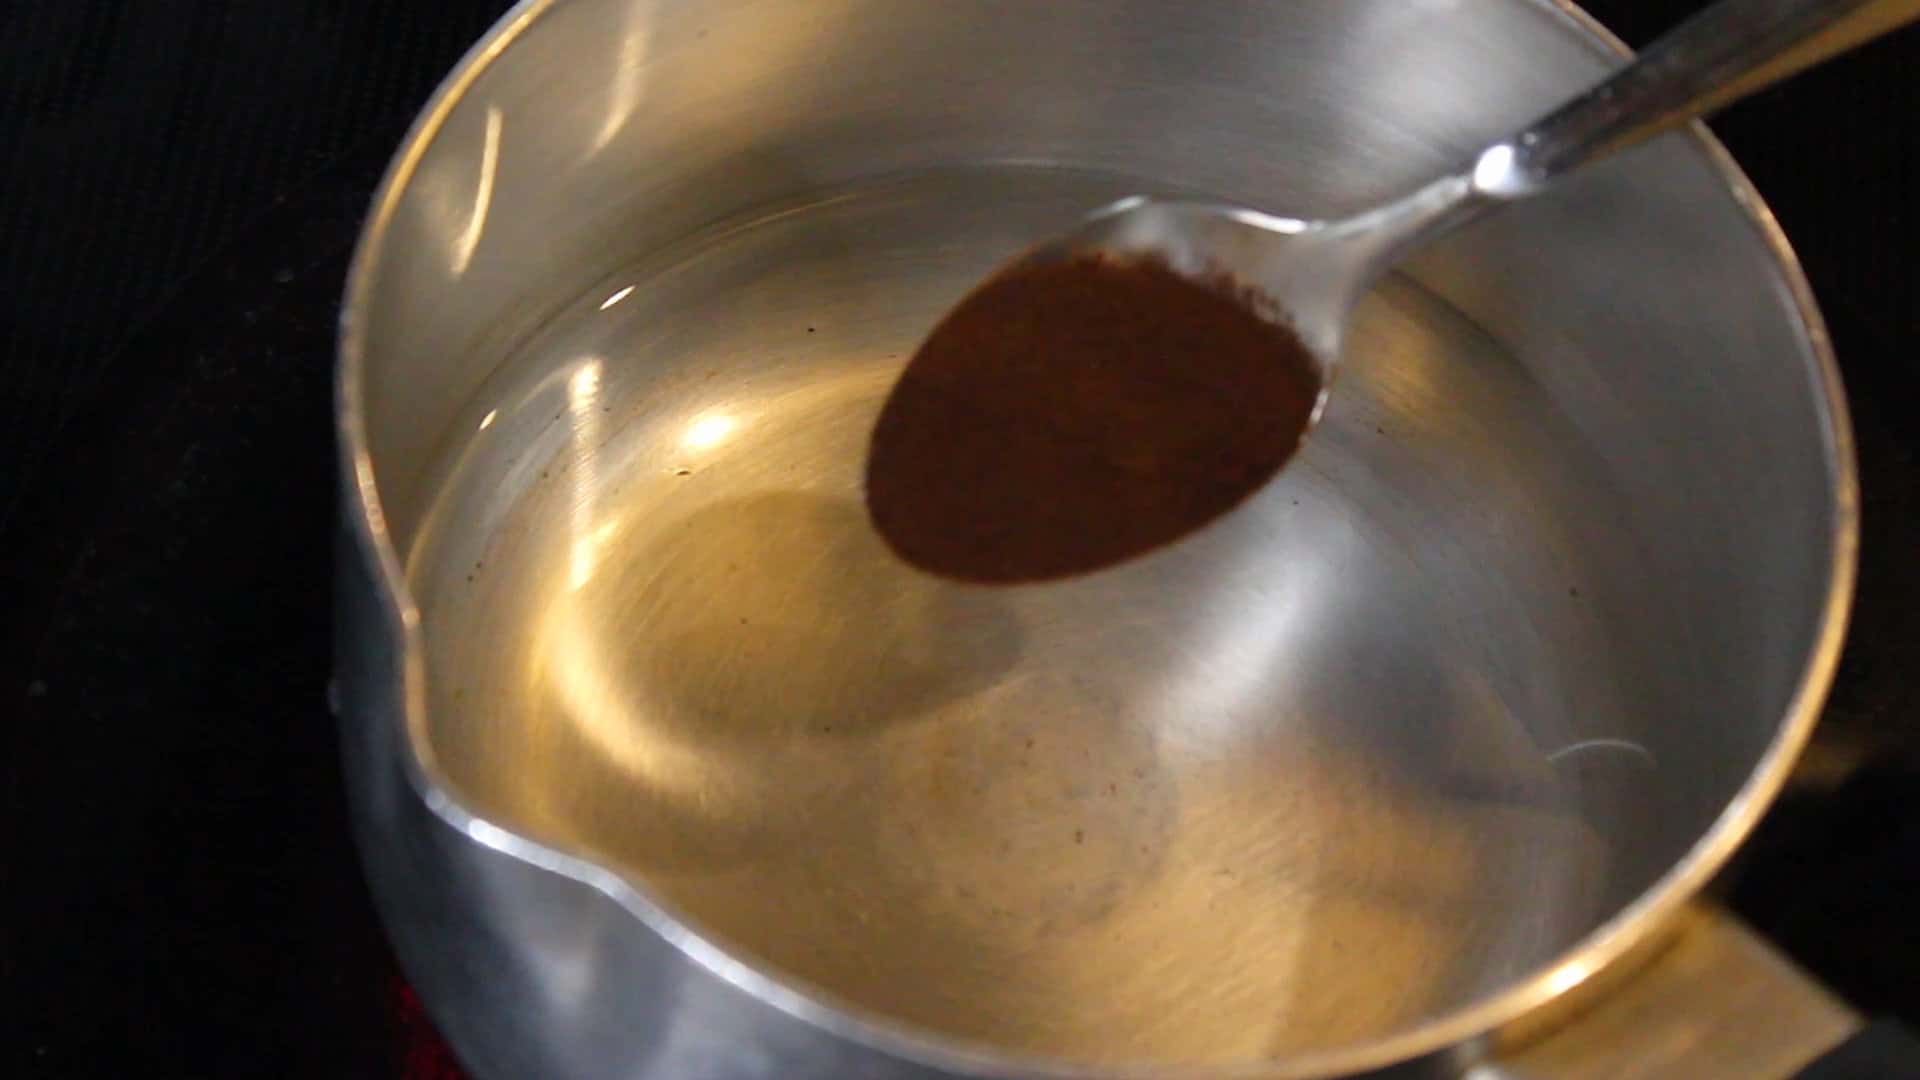 adding a teaspoon of instant black coffee powder 